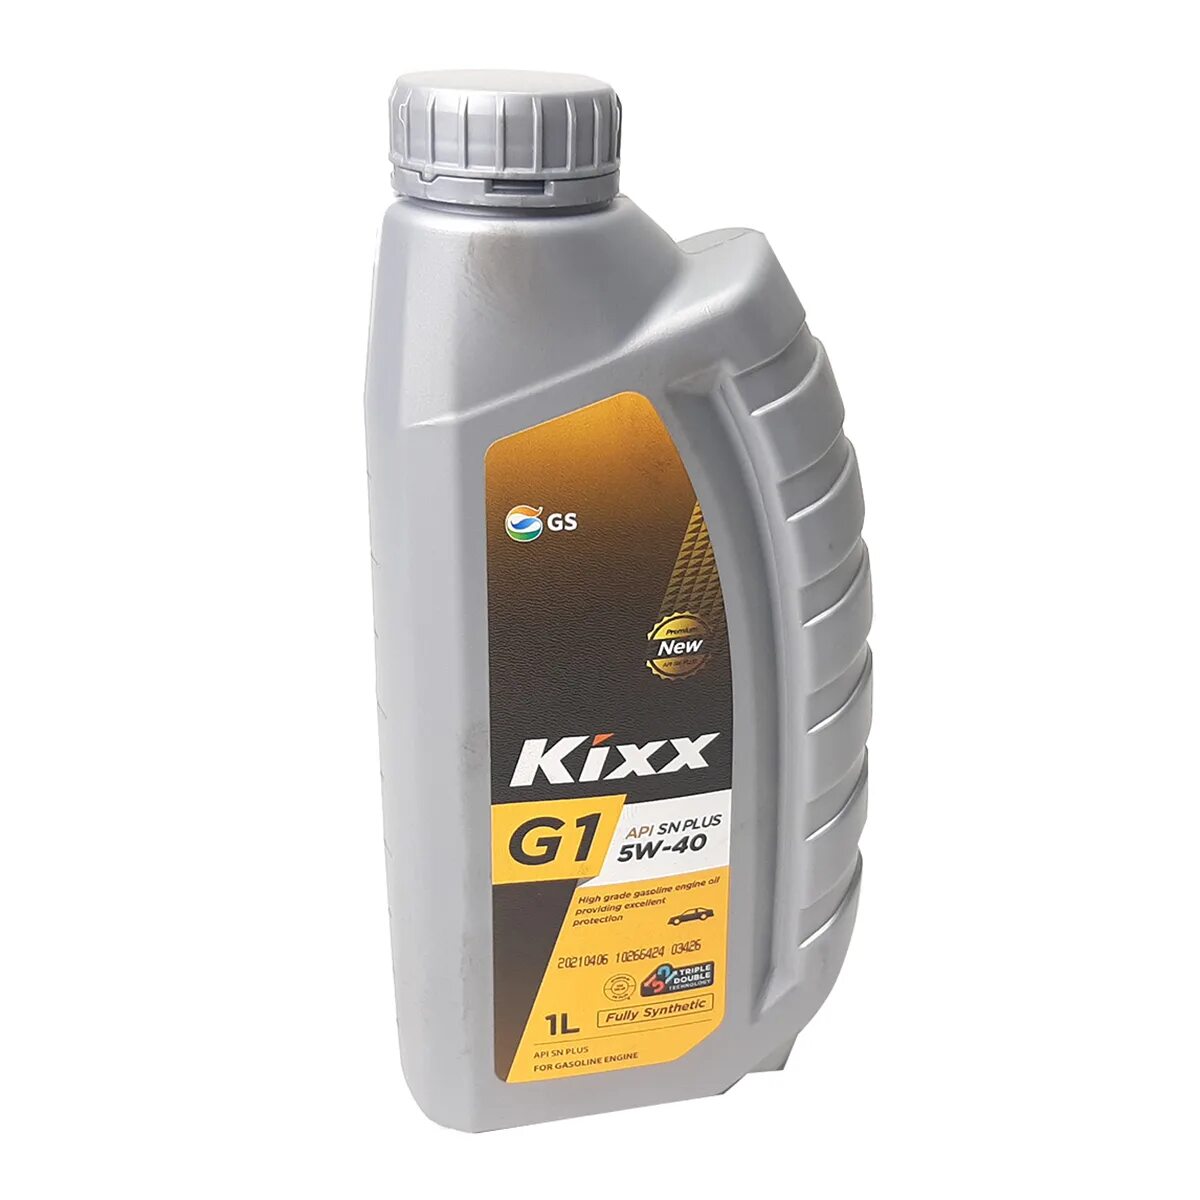 Kixx l2508al1e1. Kixx 5w40 синтетика. Kixx g1 5w-40. Kixx g1 SP 5w-40.